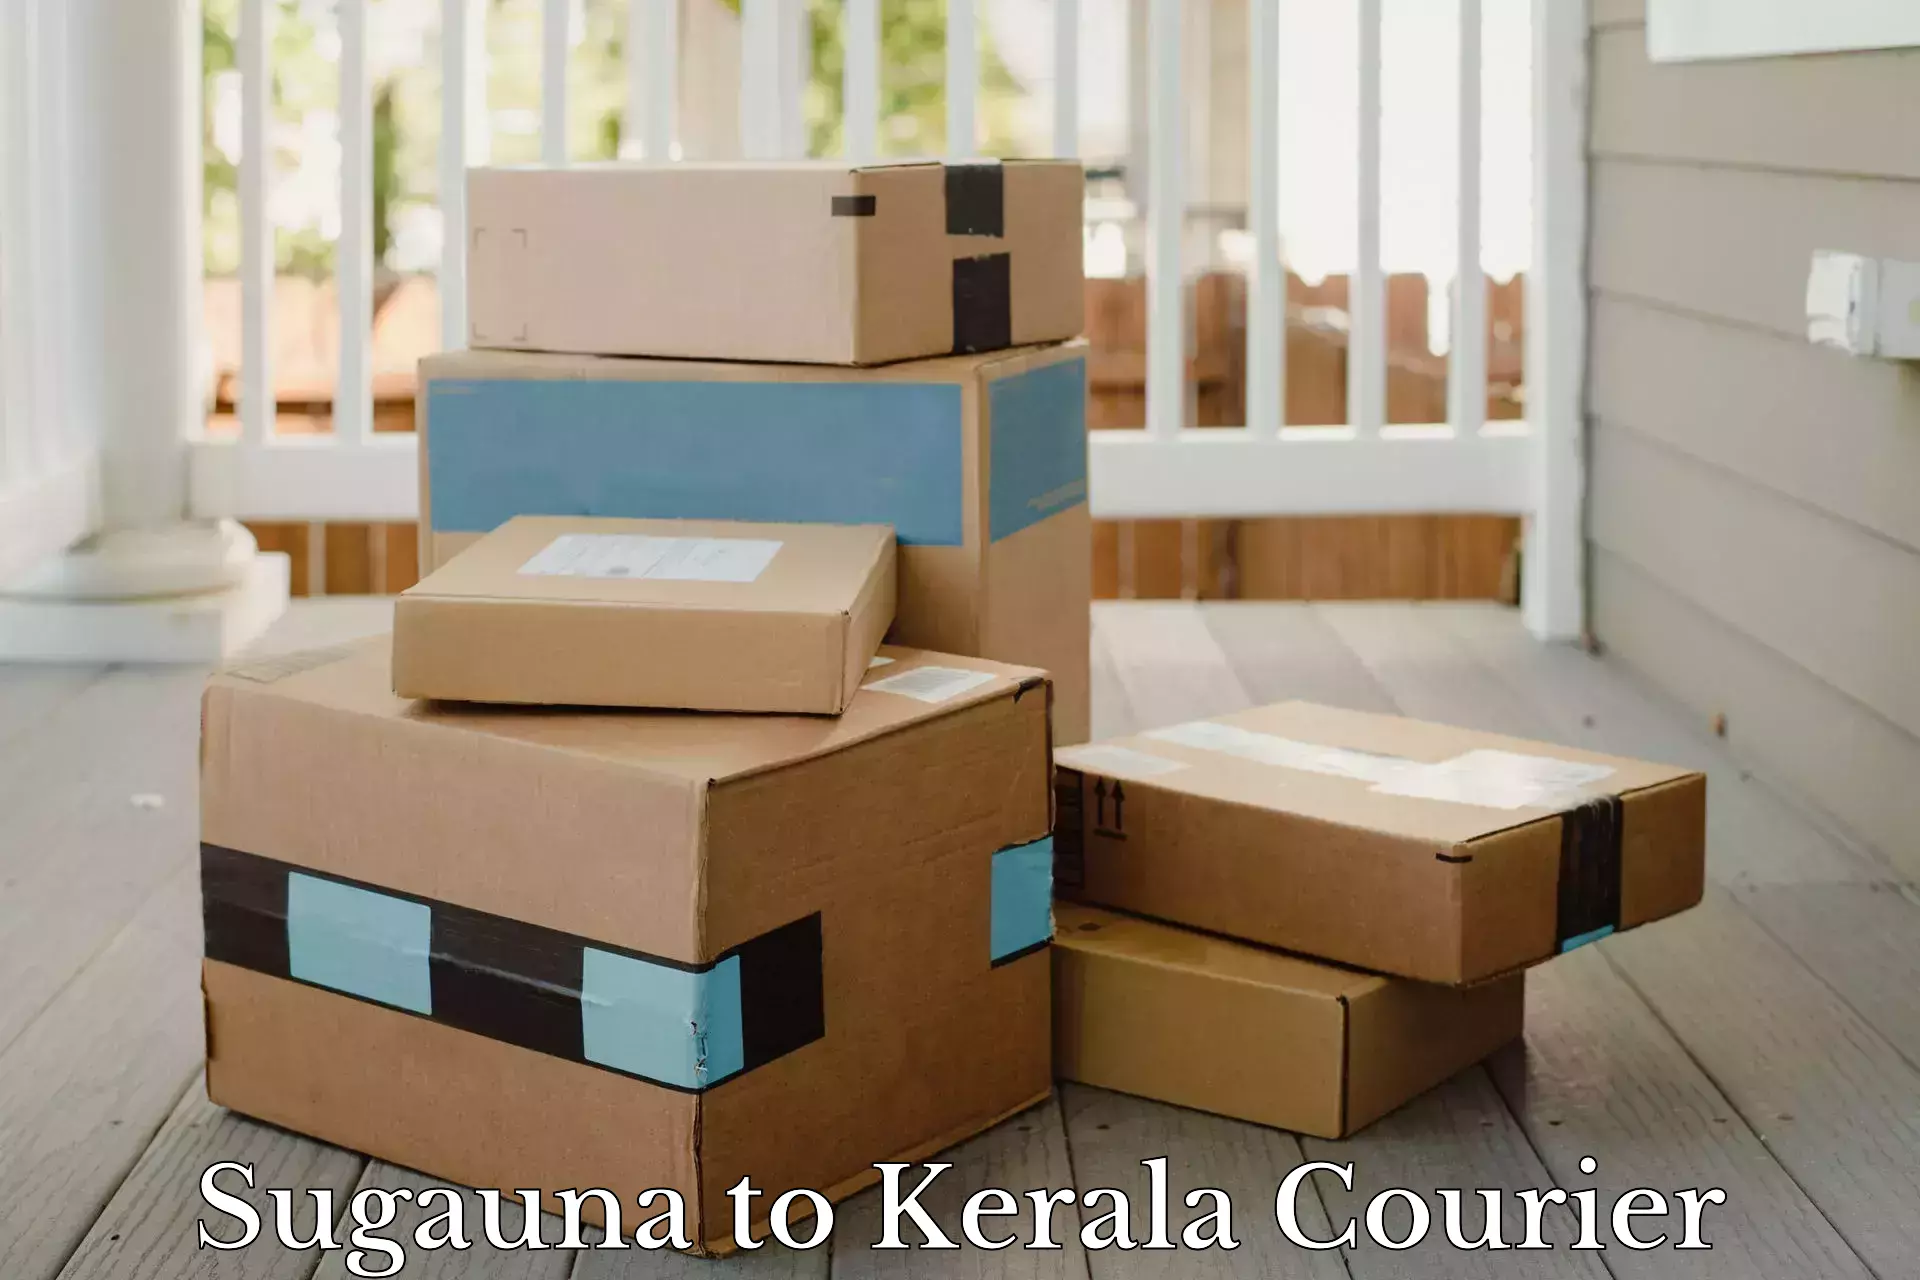 Nationwide shipping capabilities Sugauna to Thiruvananthapuram